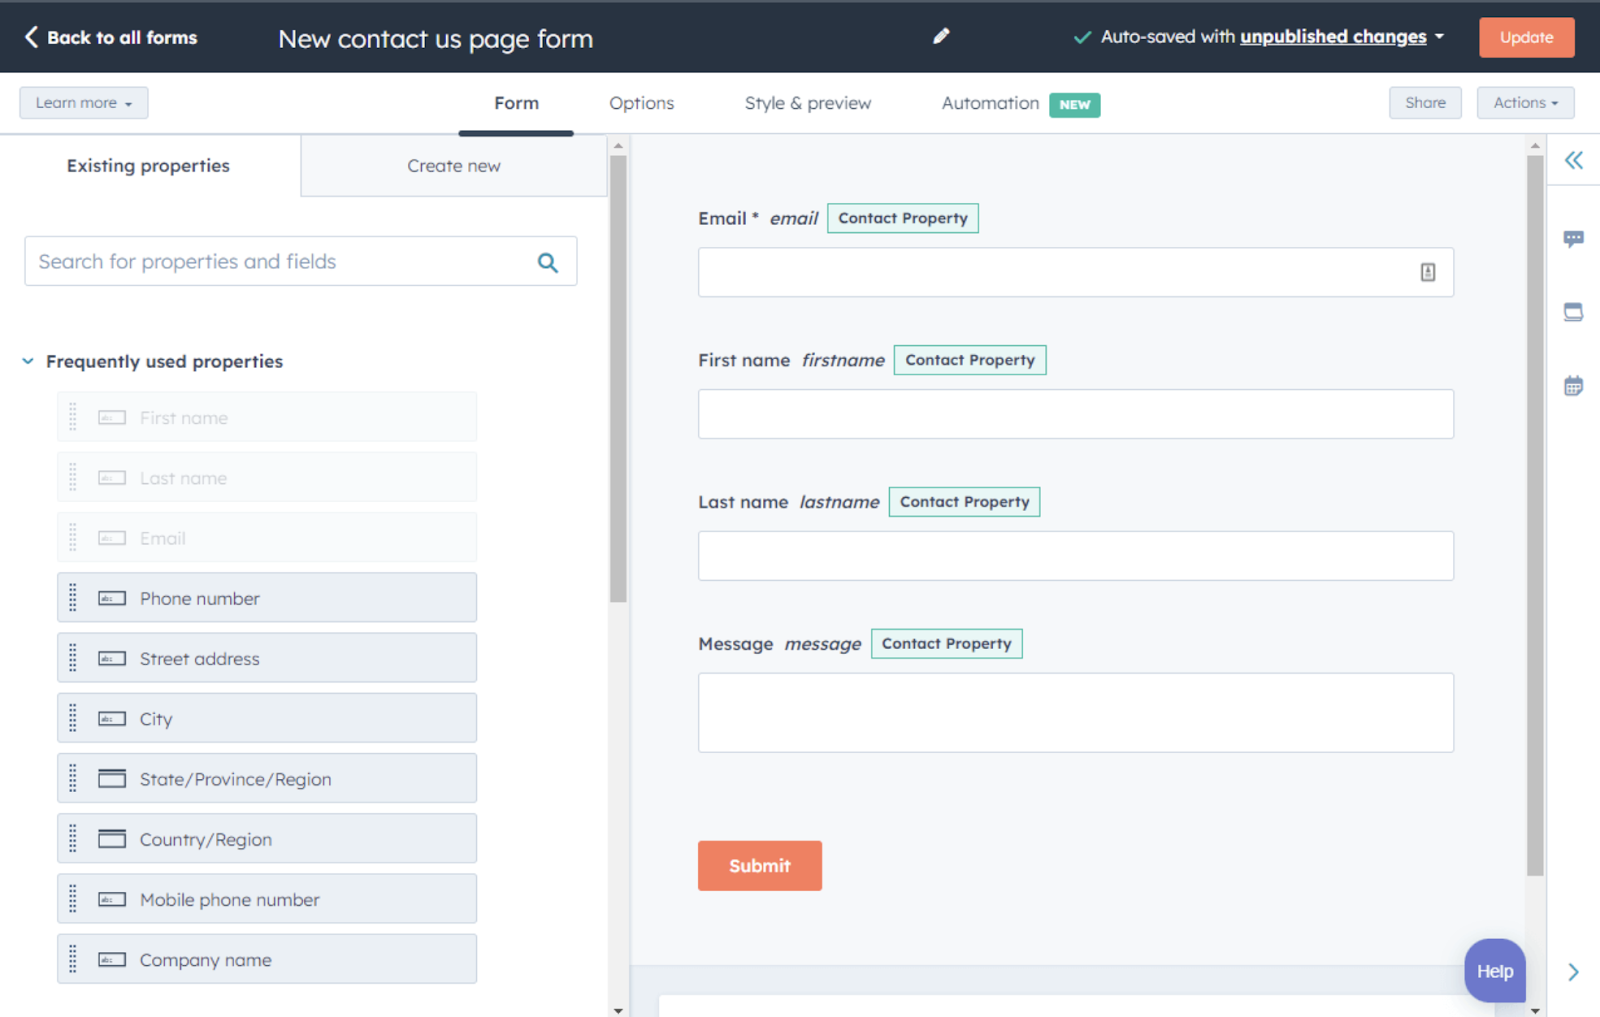 Customer feedback tools, HubSpot’s form maker